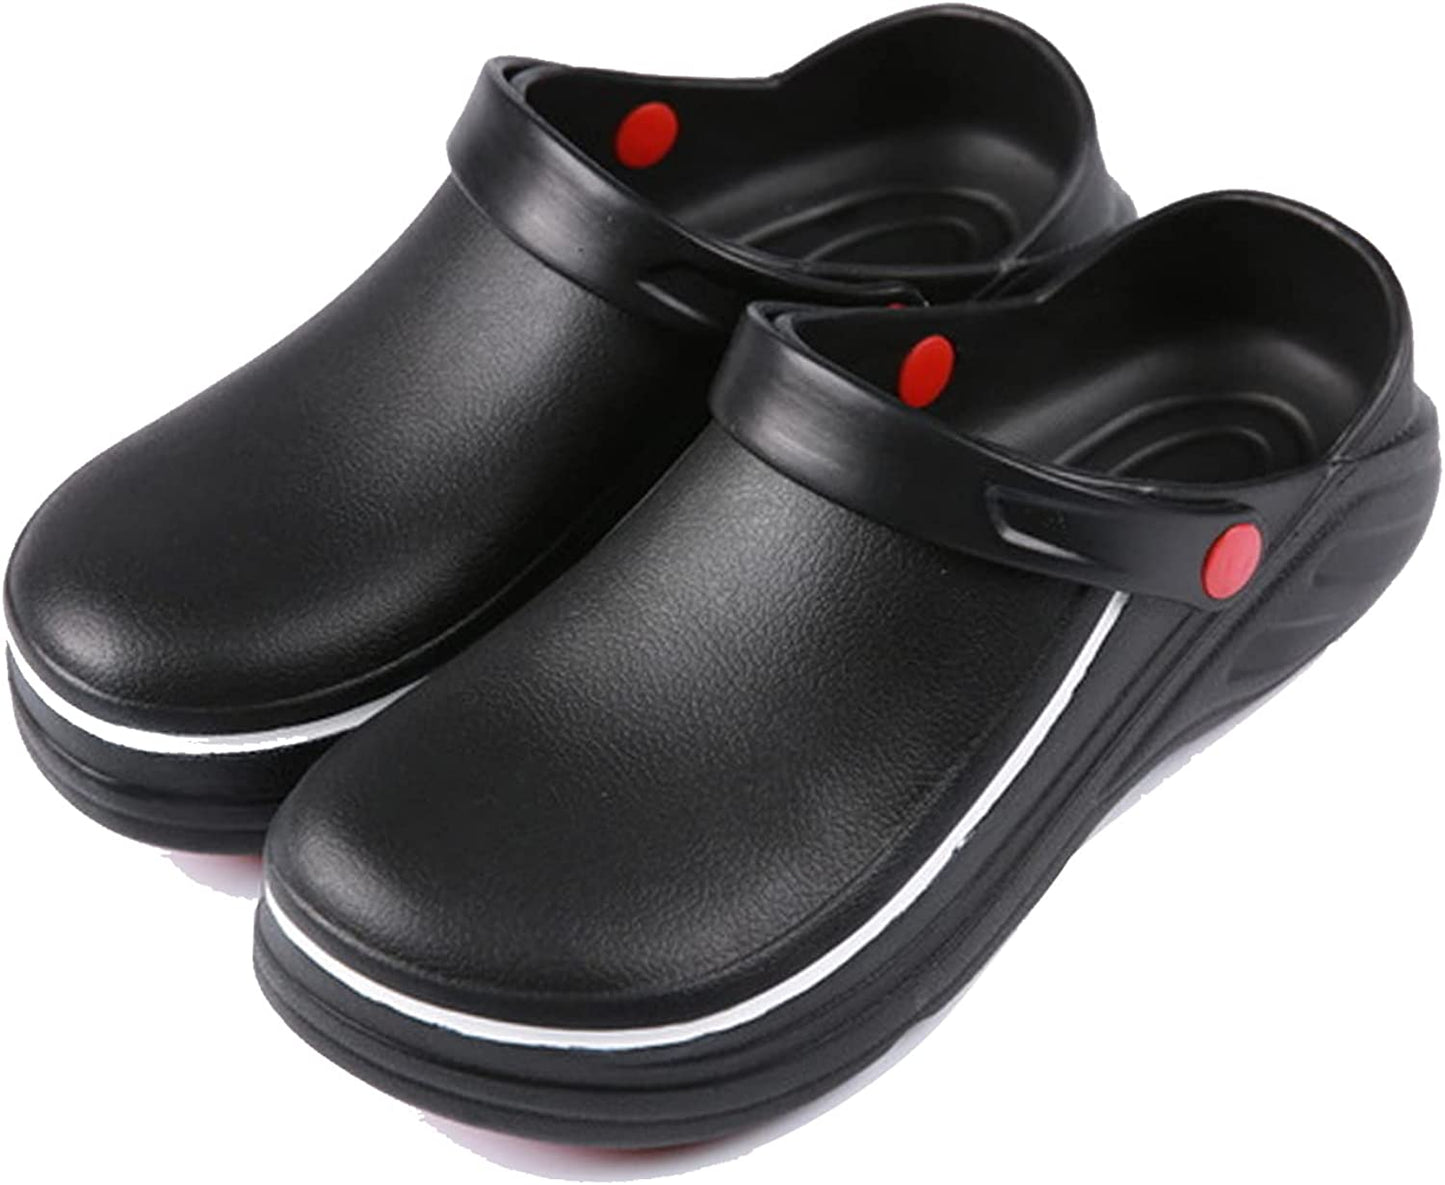 シェフシューズキッチンシューズ飲食店靴サンダル防水キッチン用靴シェフシューズスタッフ疲れない黒/白2色男女兼用（22.5-28.0 cm）からお選びいただけます